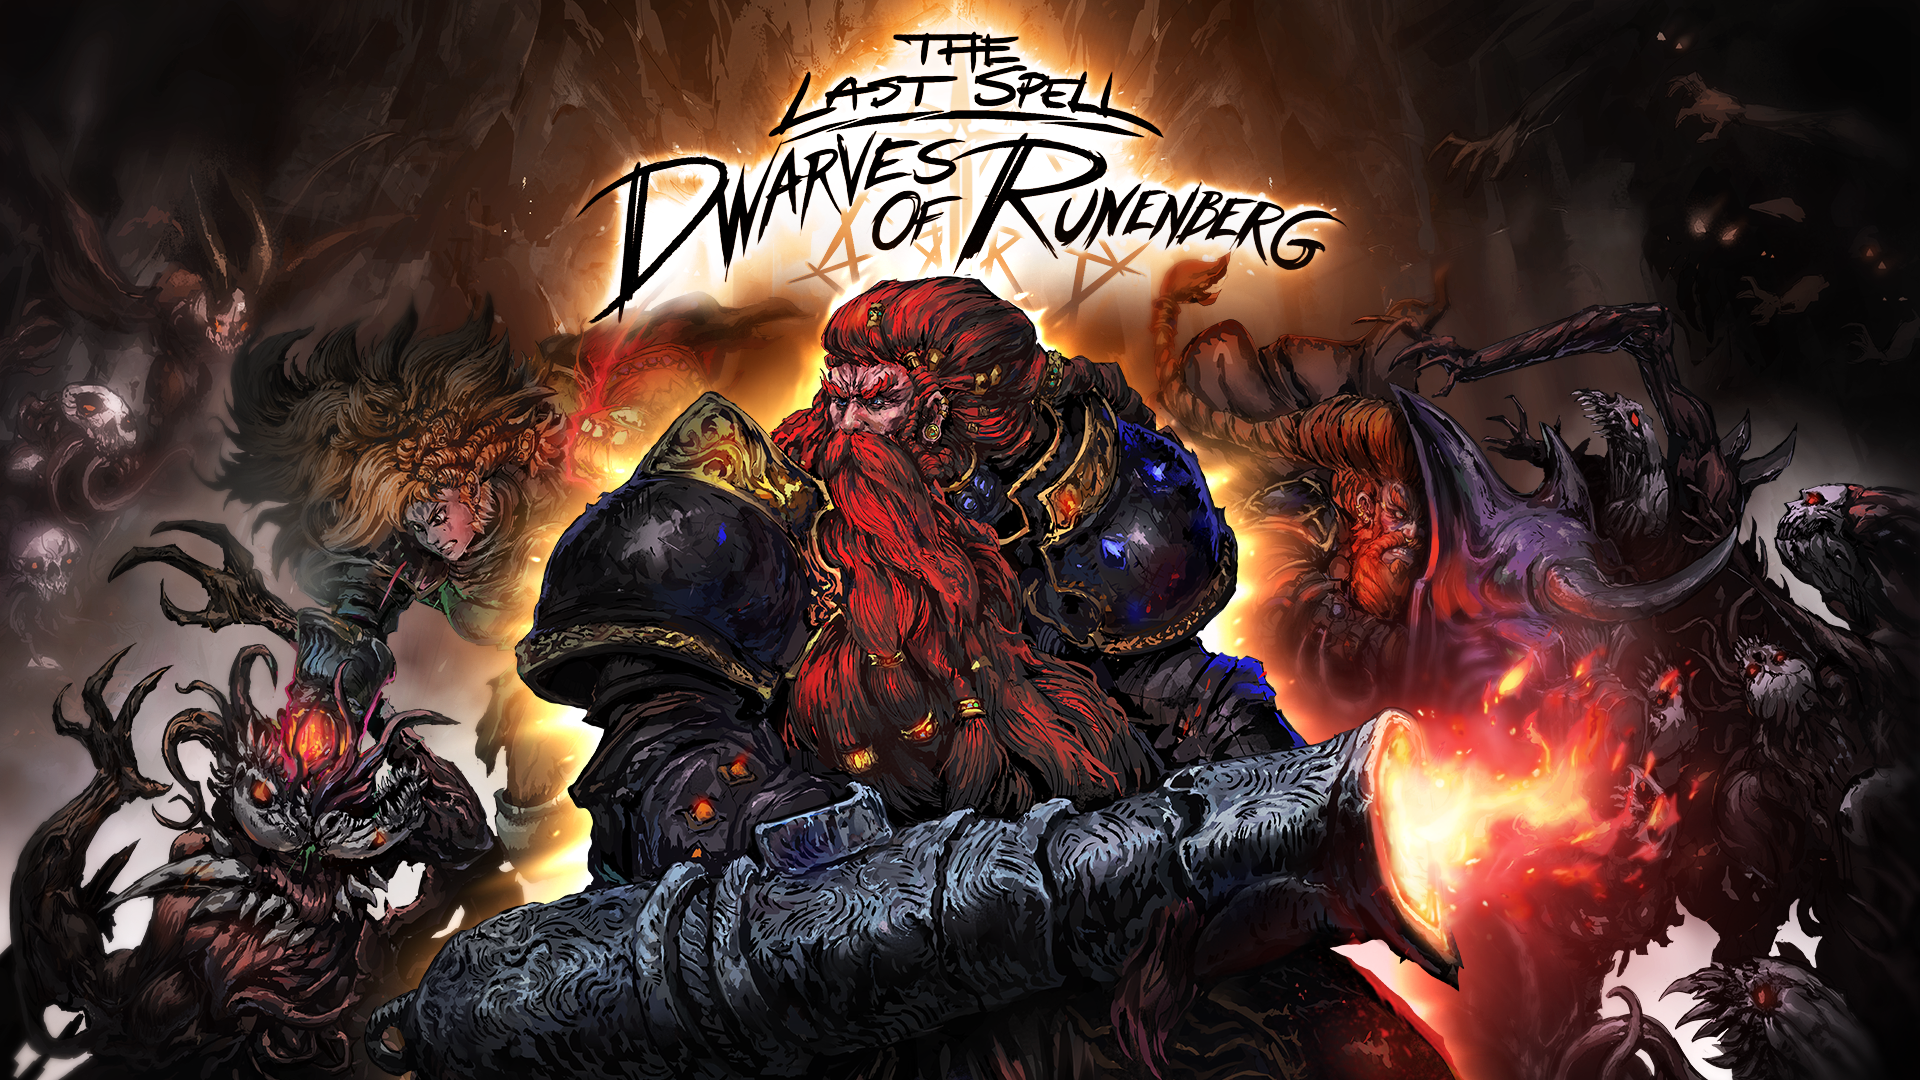 The Last Spell - Dwarves of Runenberg DLC